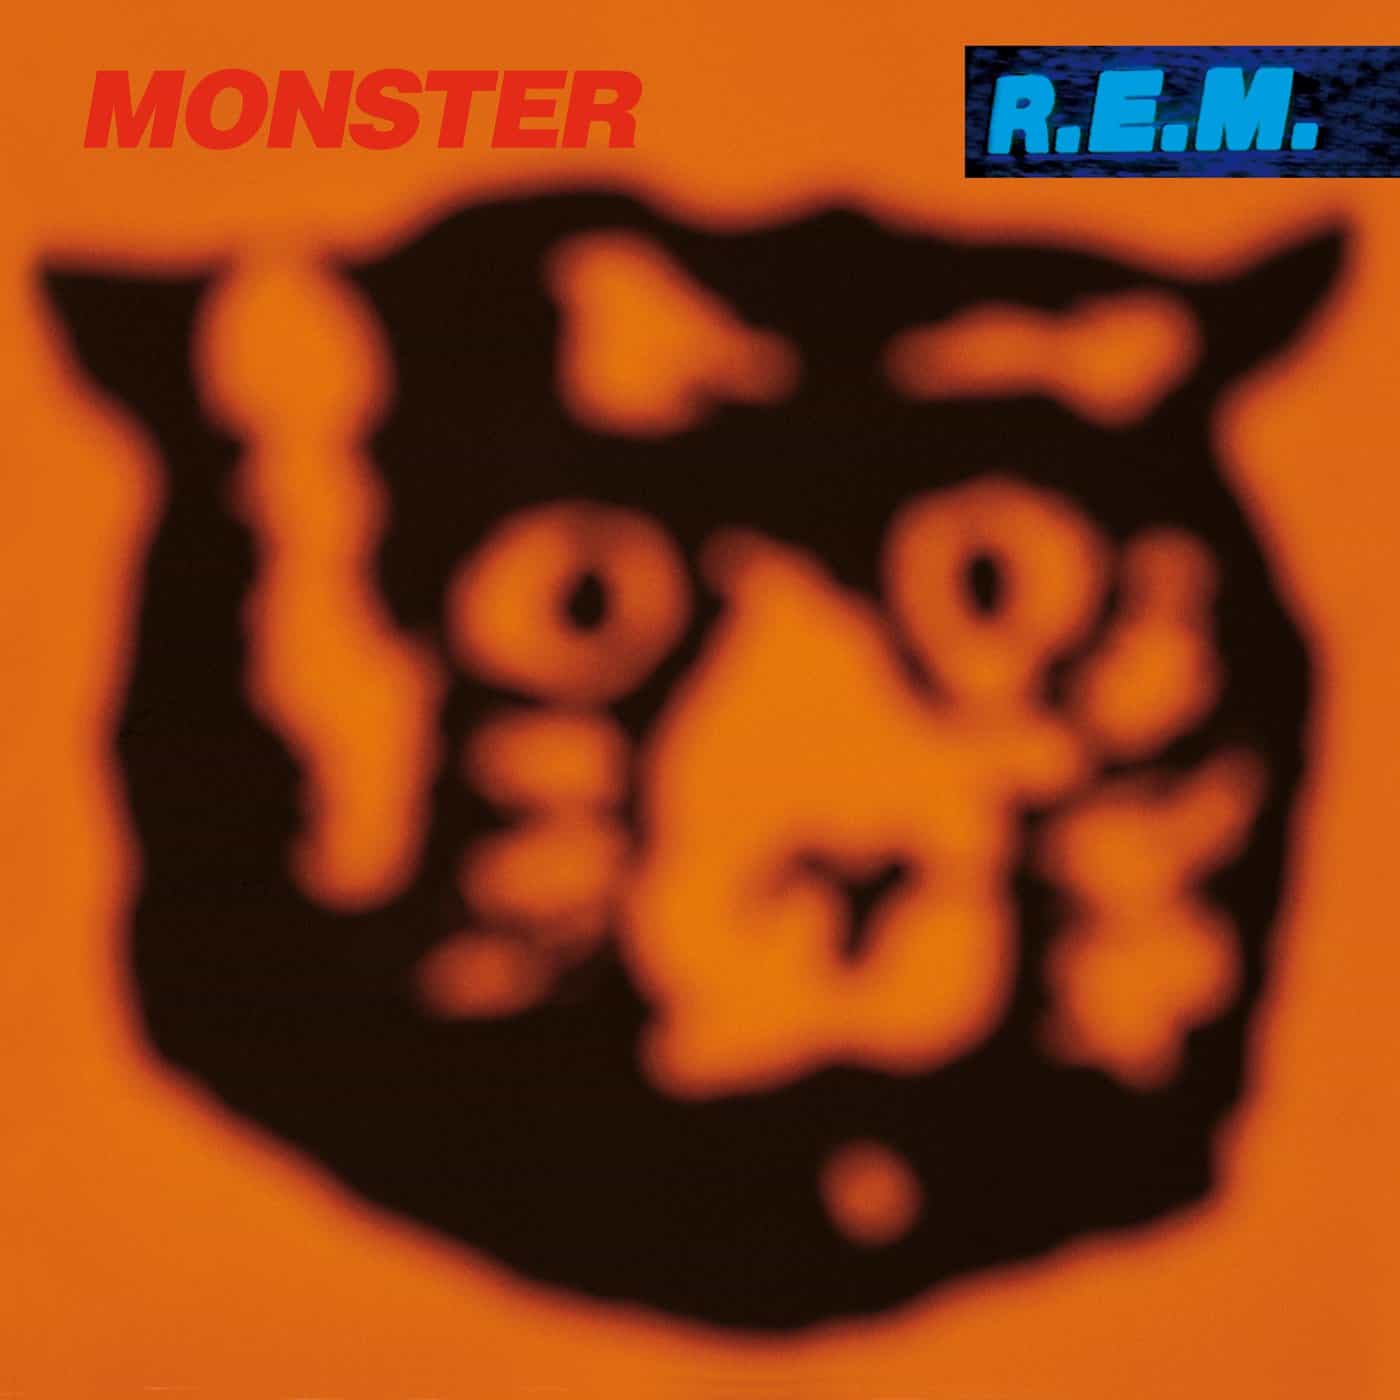 REM-Monster-vinyl-LP-record-album-front